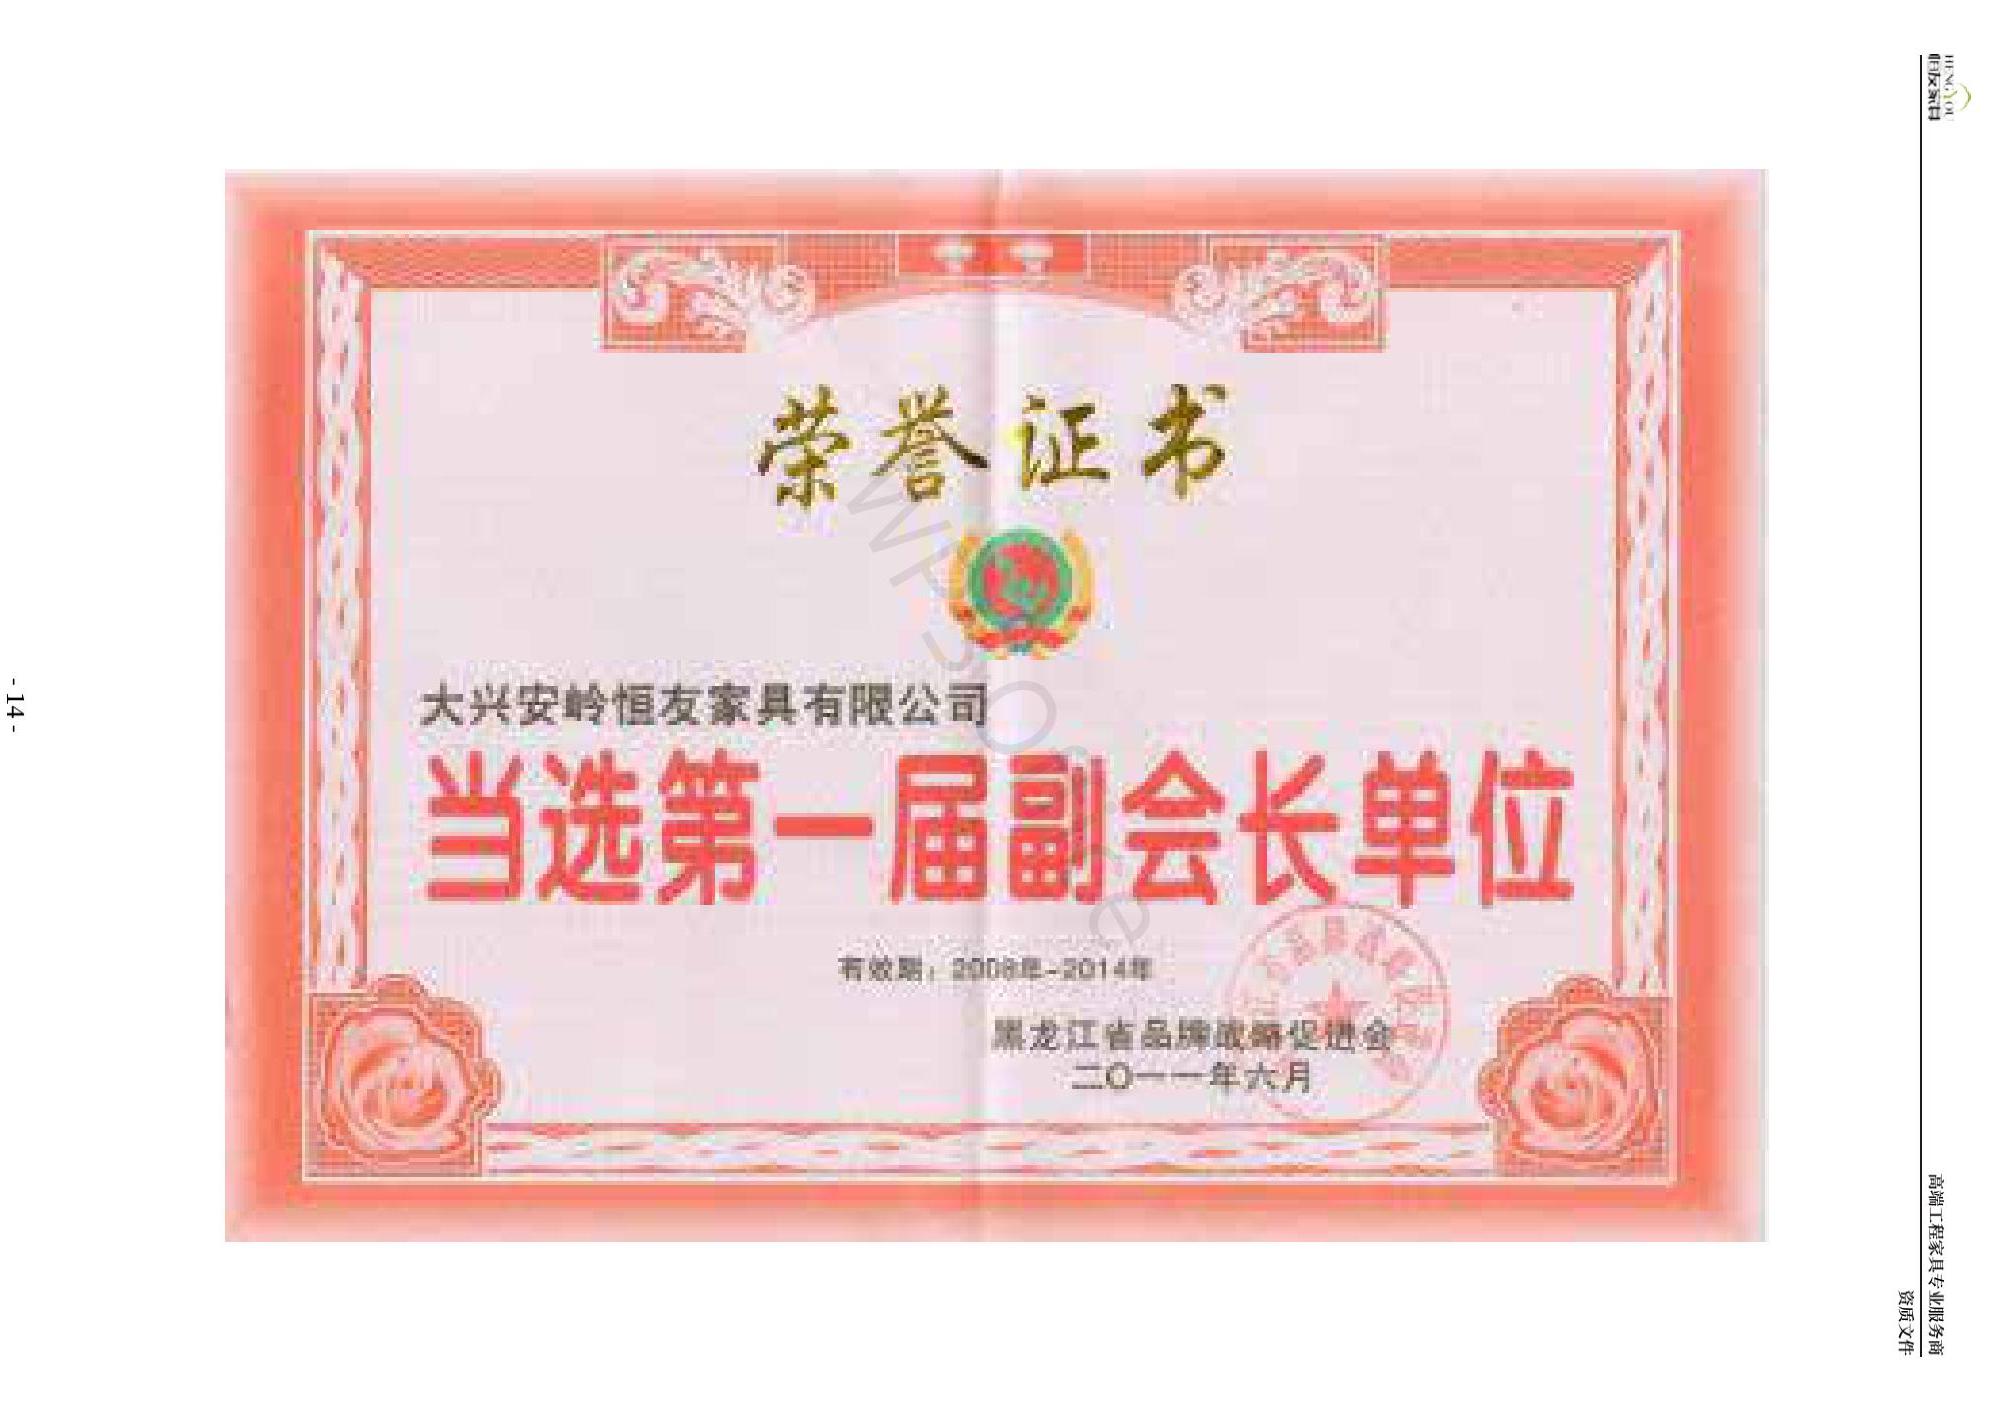 黑龙江省品牌战略促进会第一届副会长单位